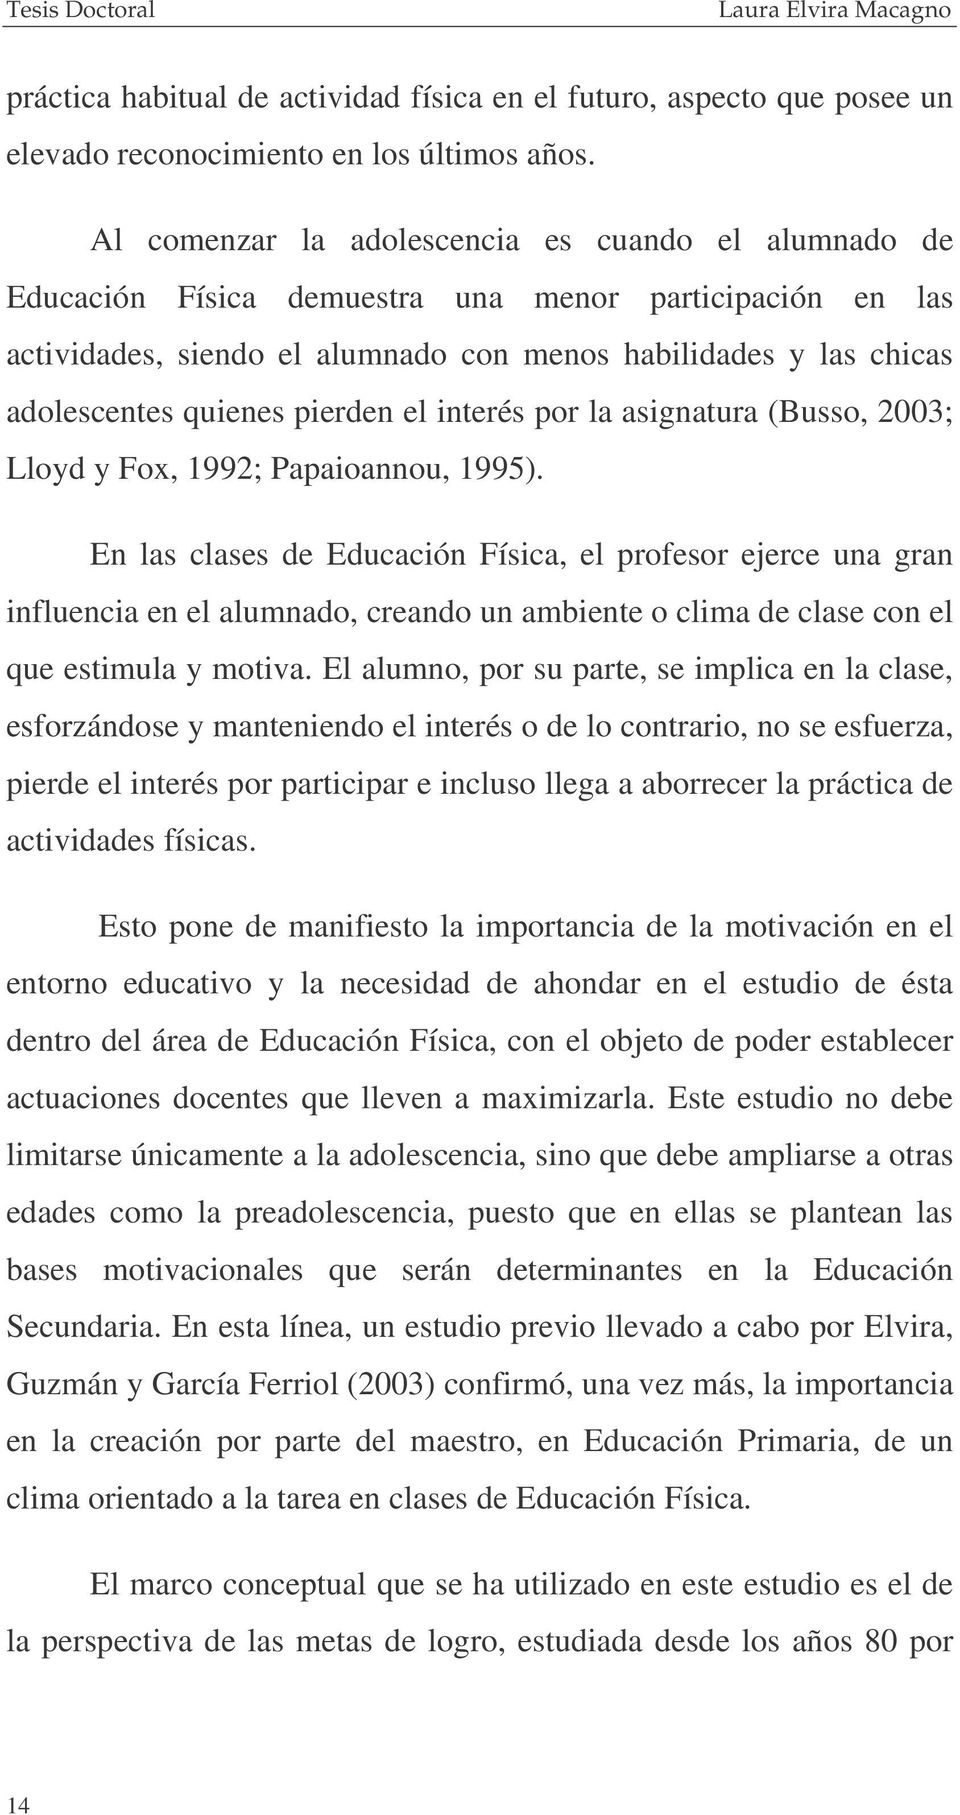 pierden el interés por la asignatura (Busso, 2003; Lloyd y Fox, 1992; Papaioannou, 1995).